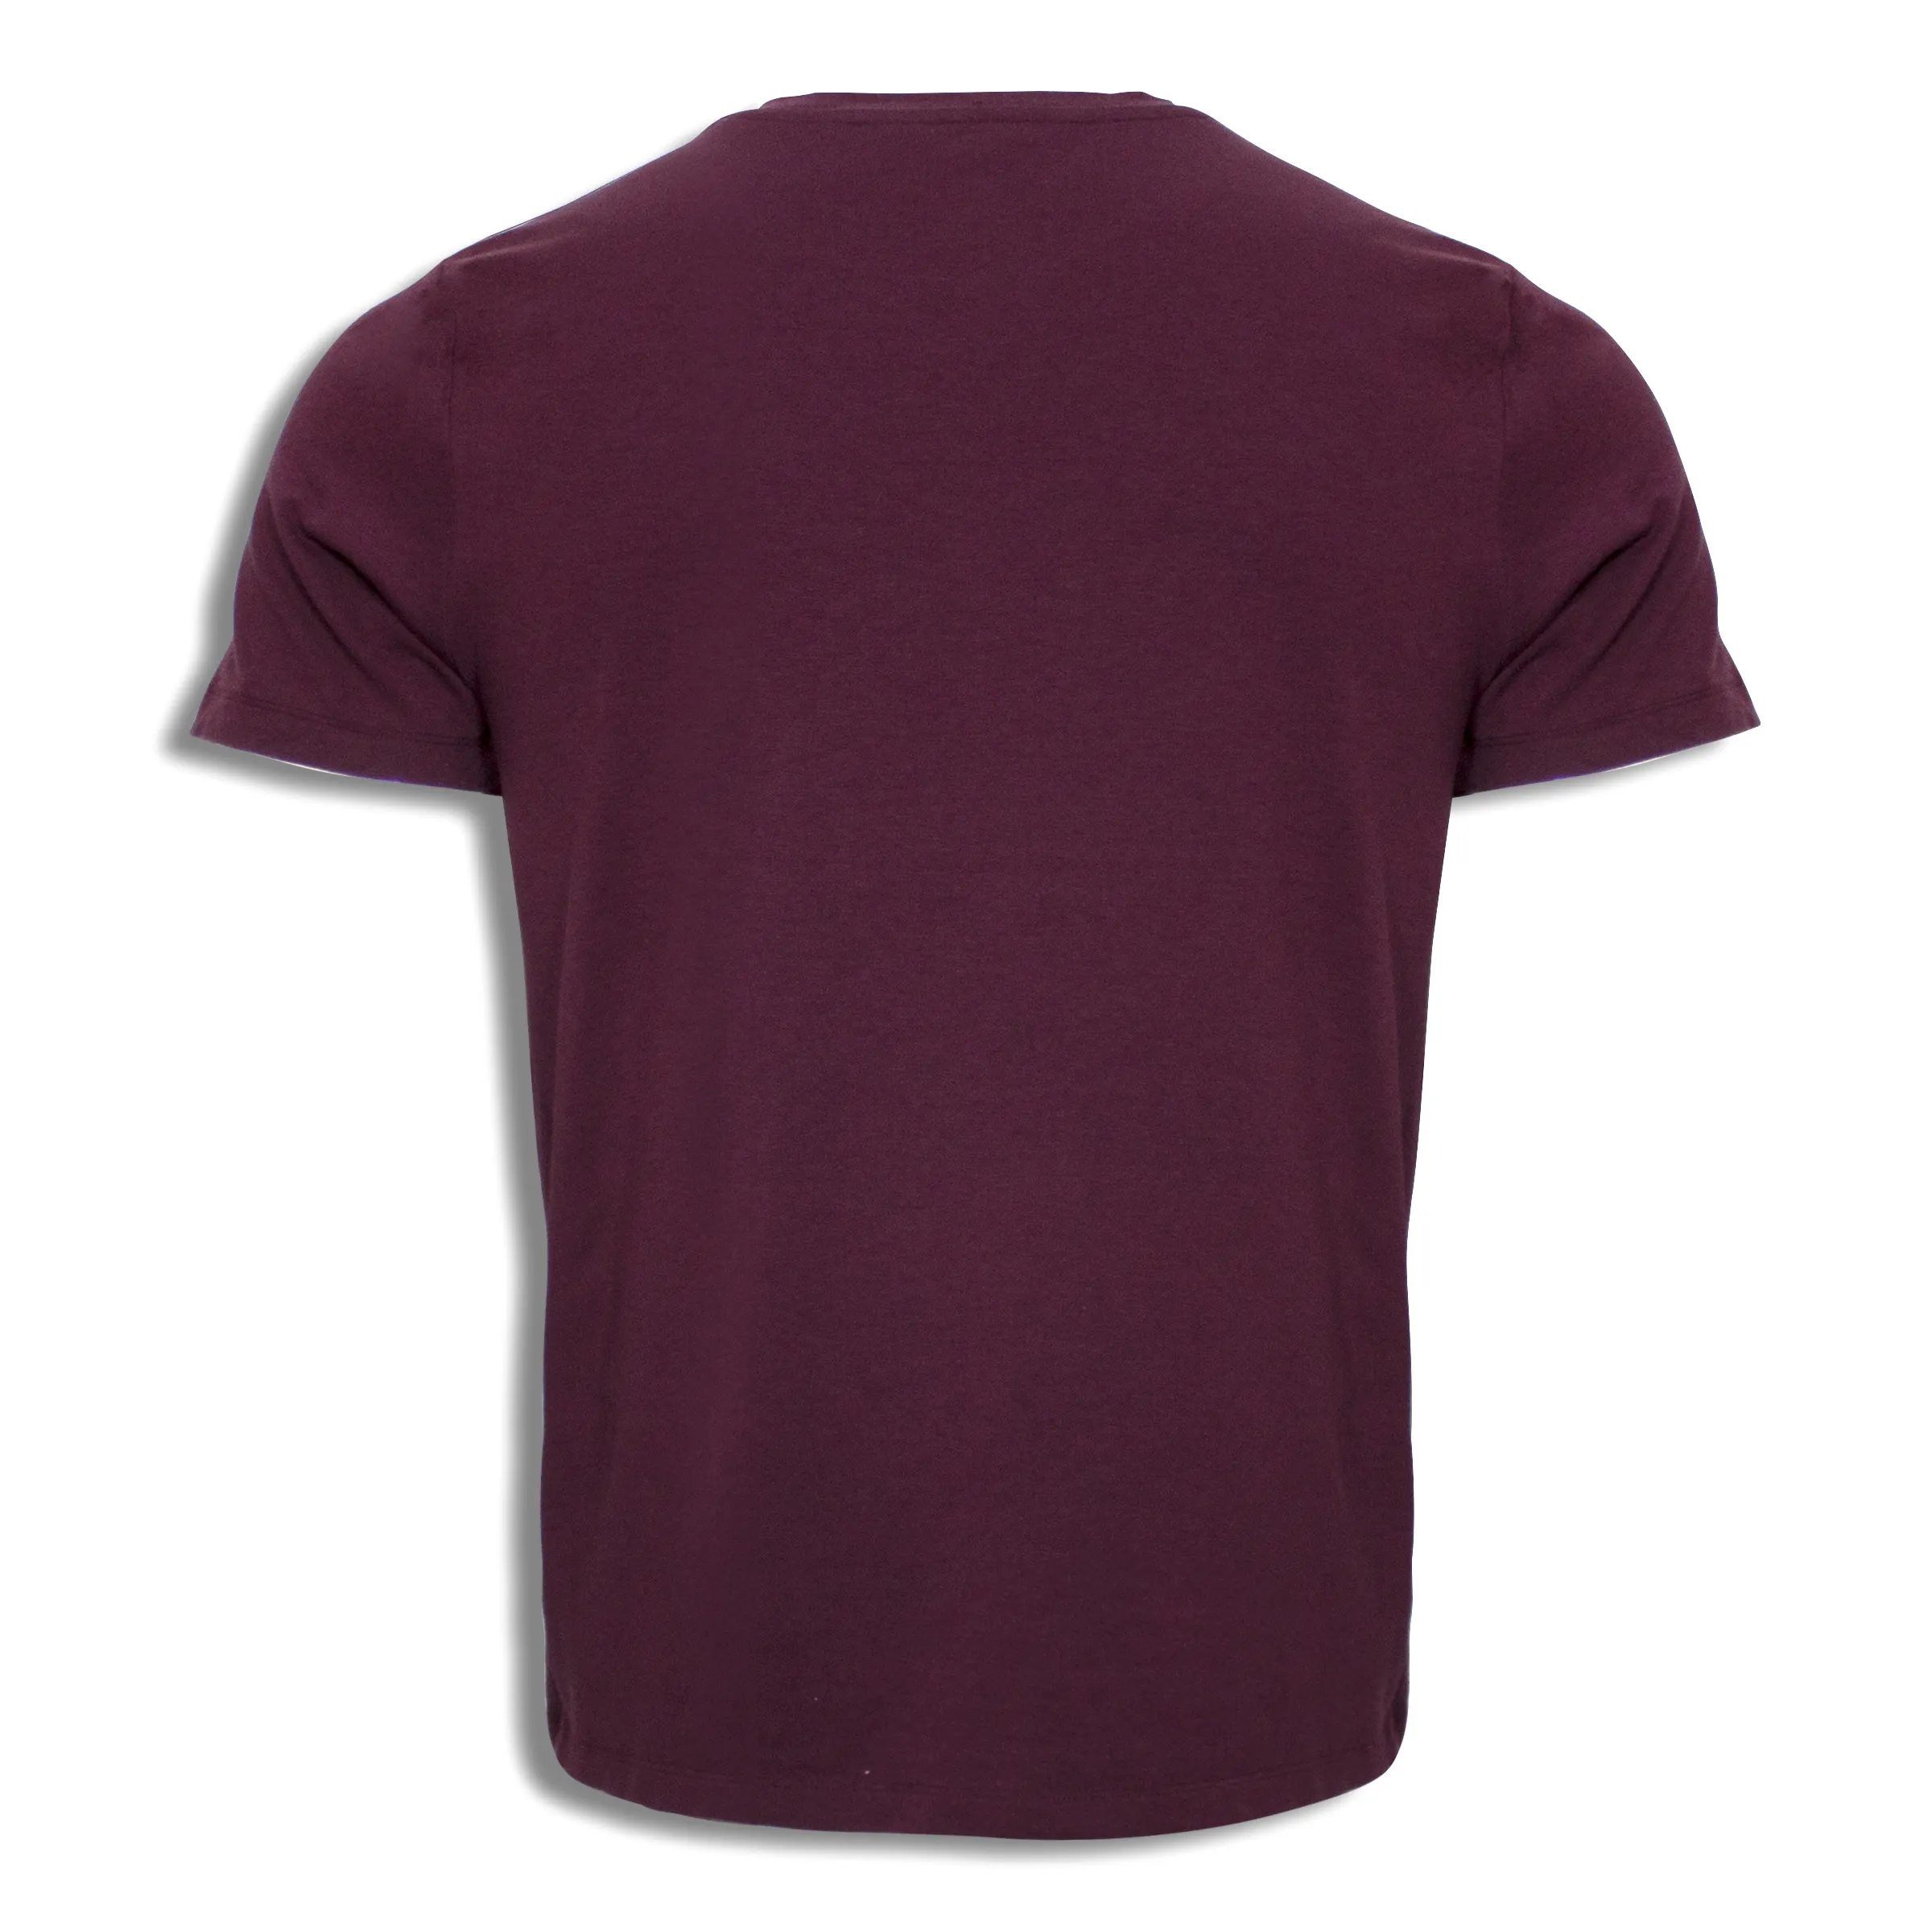 Fabrik FOB angemessener Preis T-Shirt für Männer 60% Baumwolle 40% Polyester und als Fitness-T-Shirt von Chalaco Fabrik Vietnam verwenden